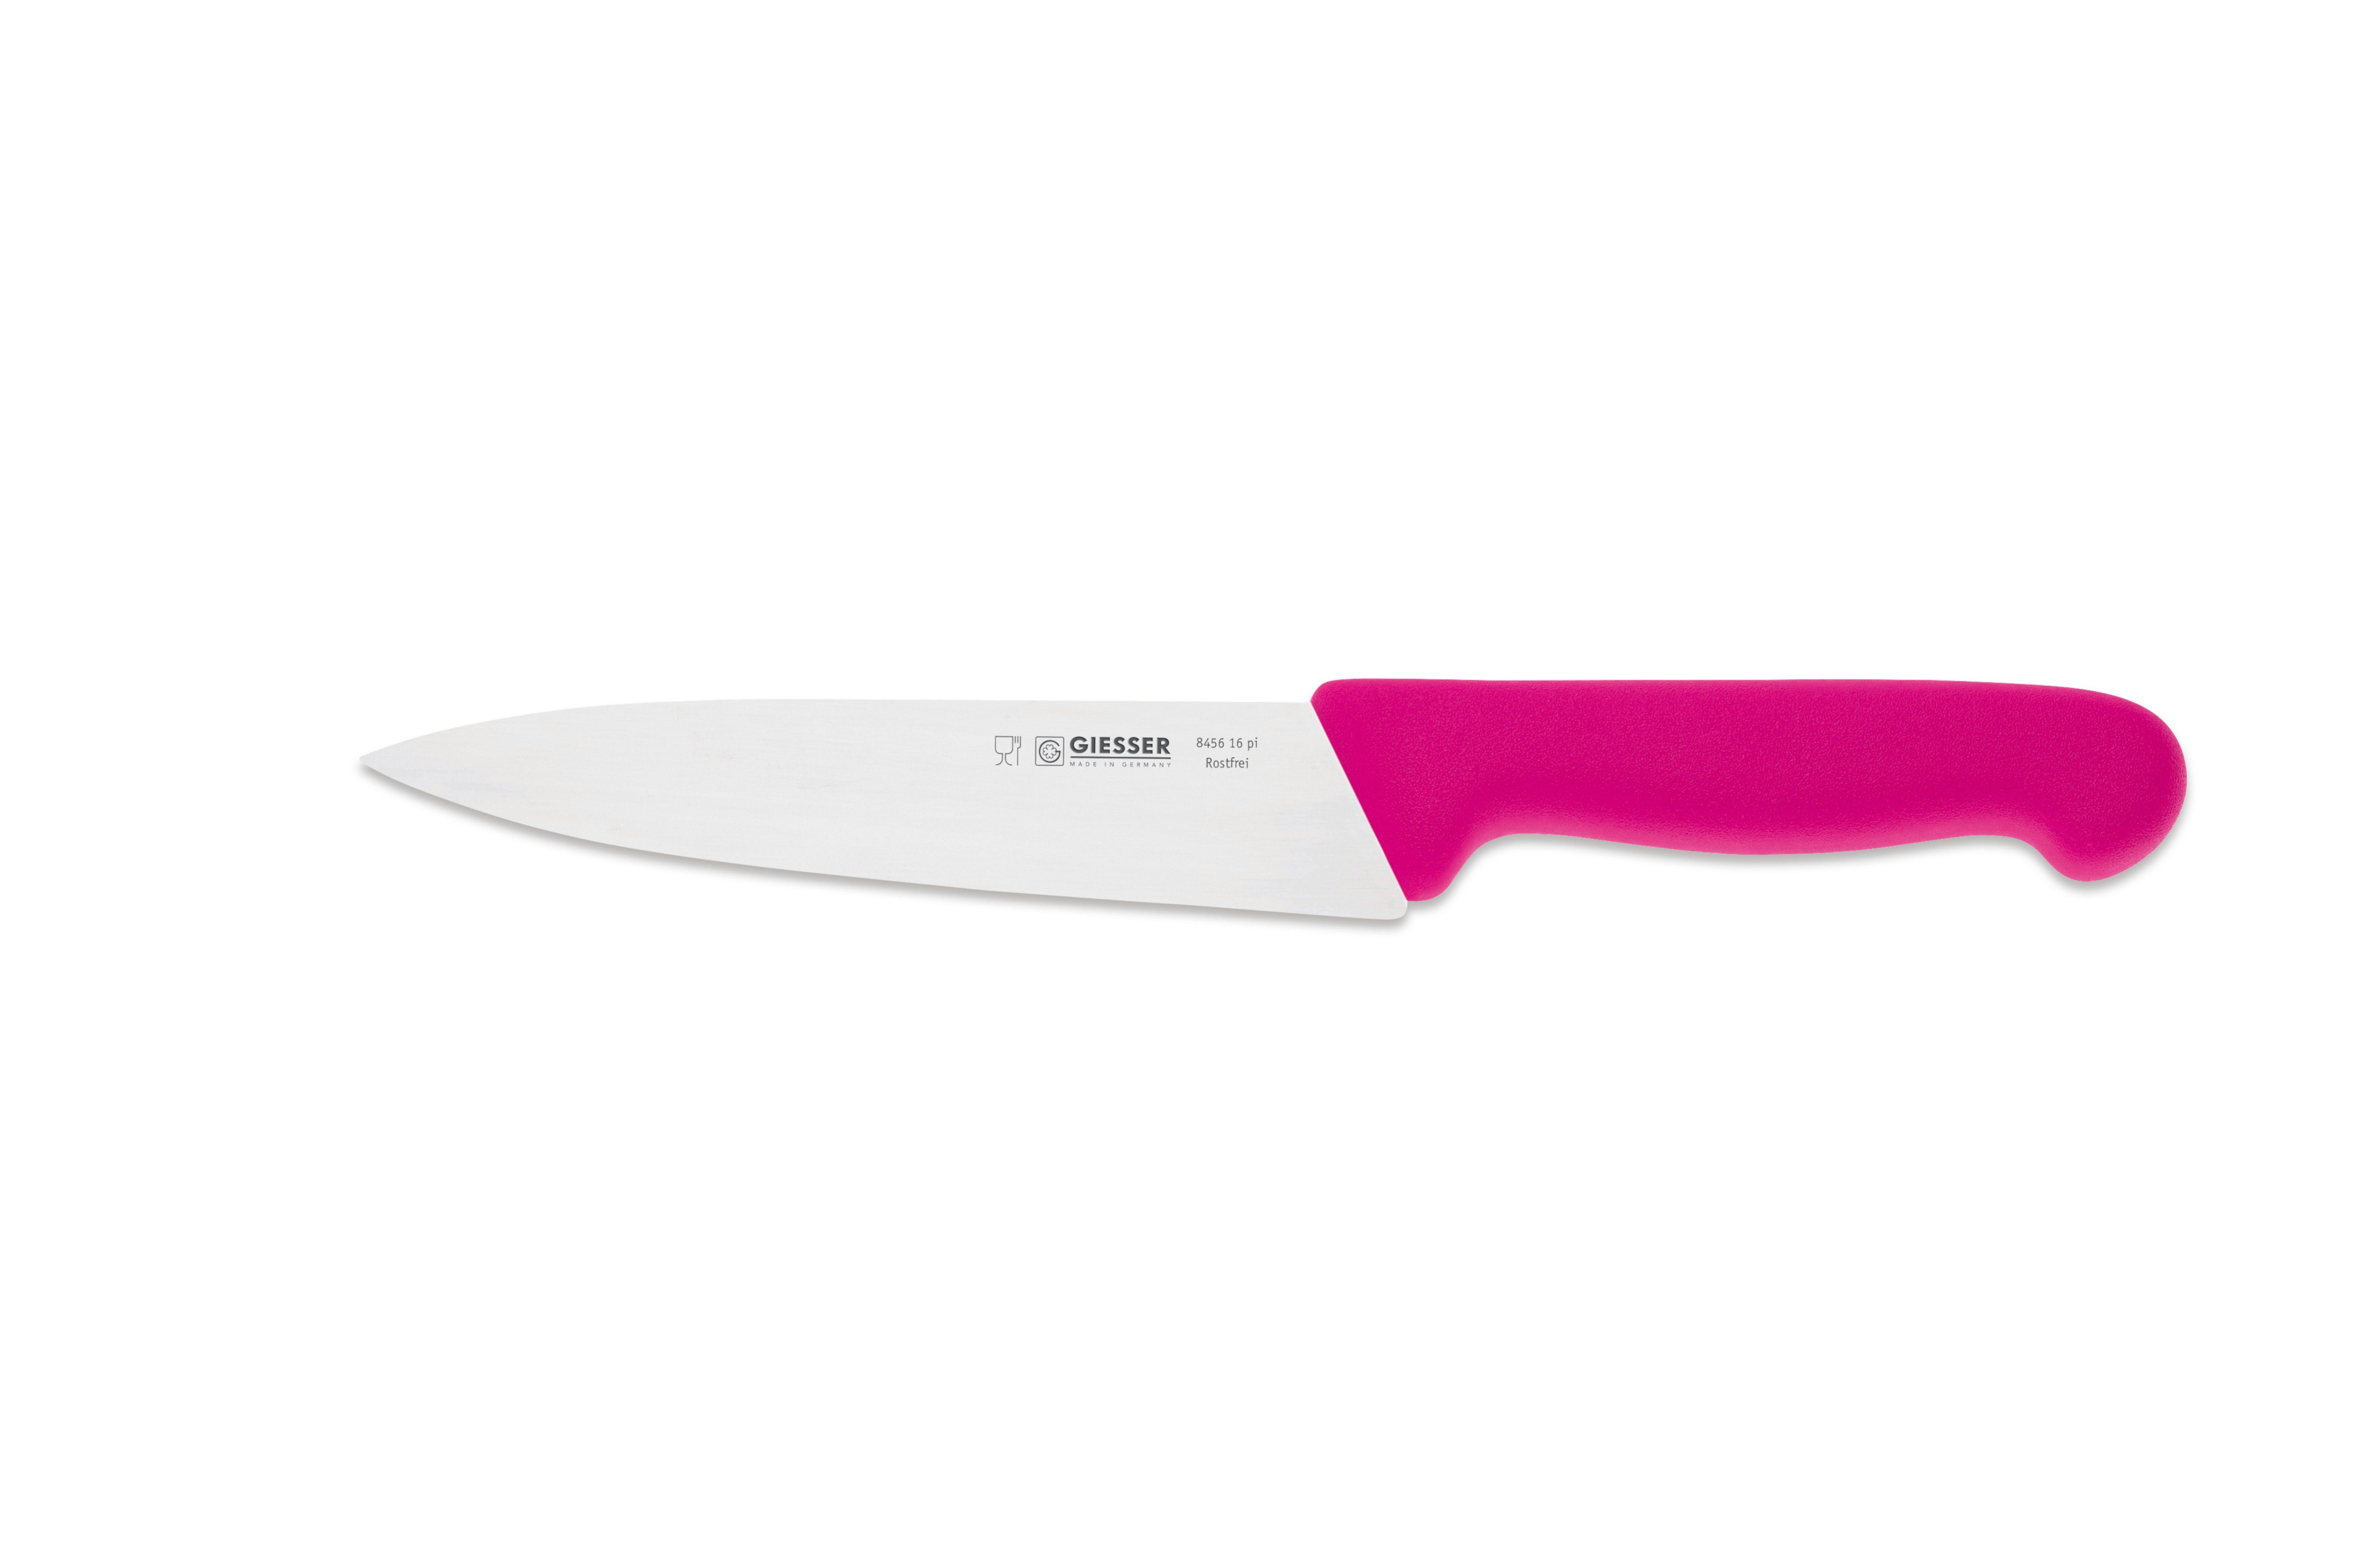 Giesser Messer Kochmesser Küchenmesser 8456, schmale, mittelspitze Klinge, scharf Handabzug, Ideal für jede Küche pink